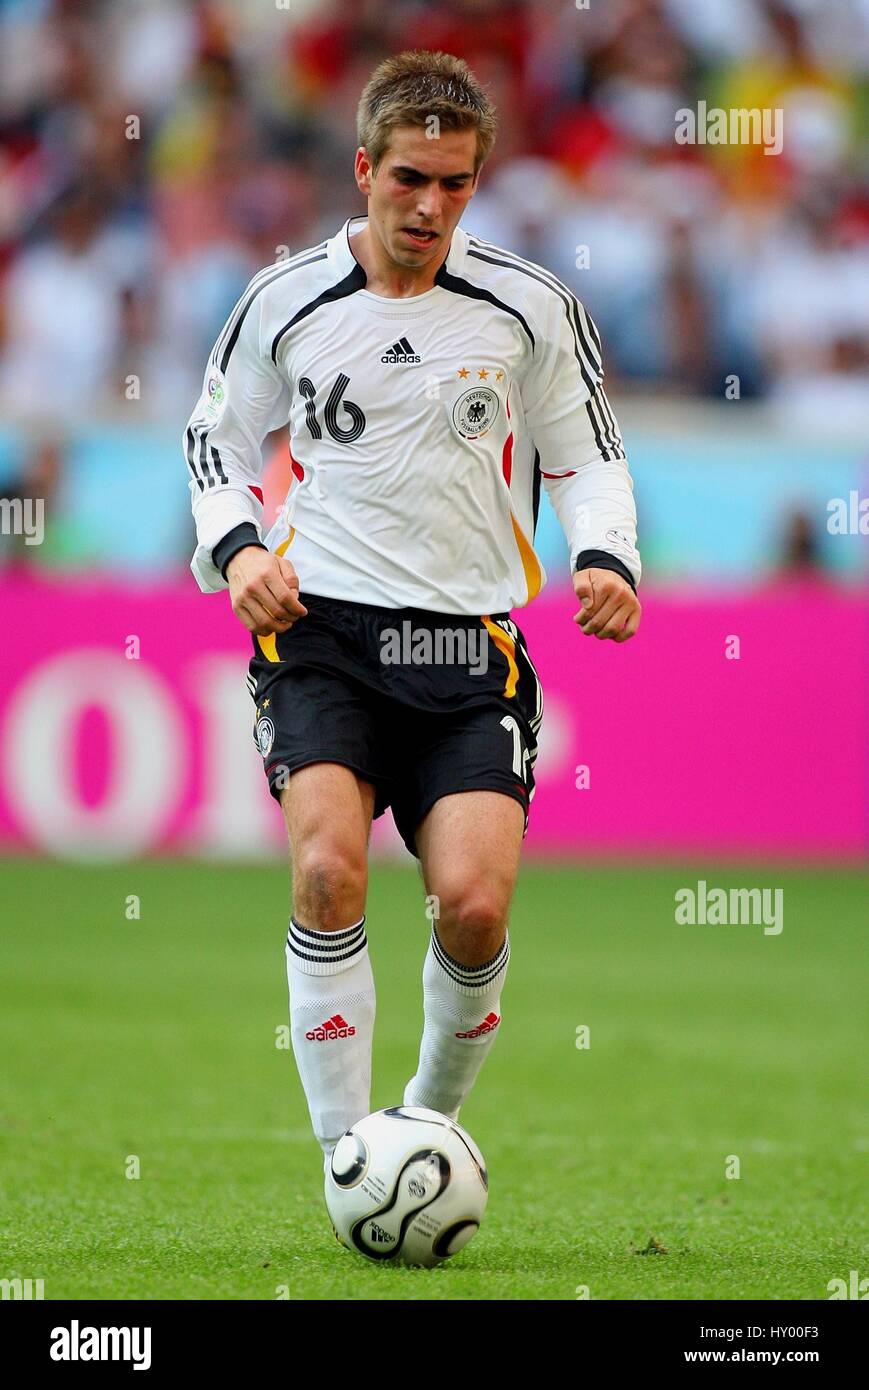 PHILIPP LAHM GERMANY & BAYERN MUNICH WORLD CUP MUNICH GERMANY 09 June 2006  Stock Photo - Alamy